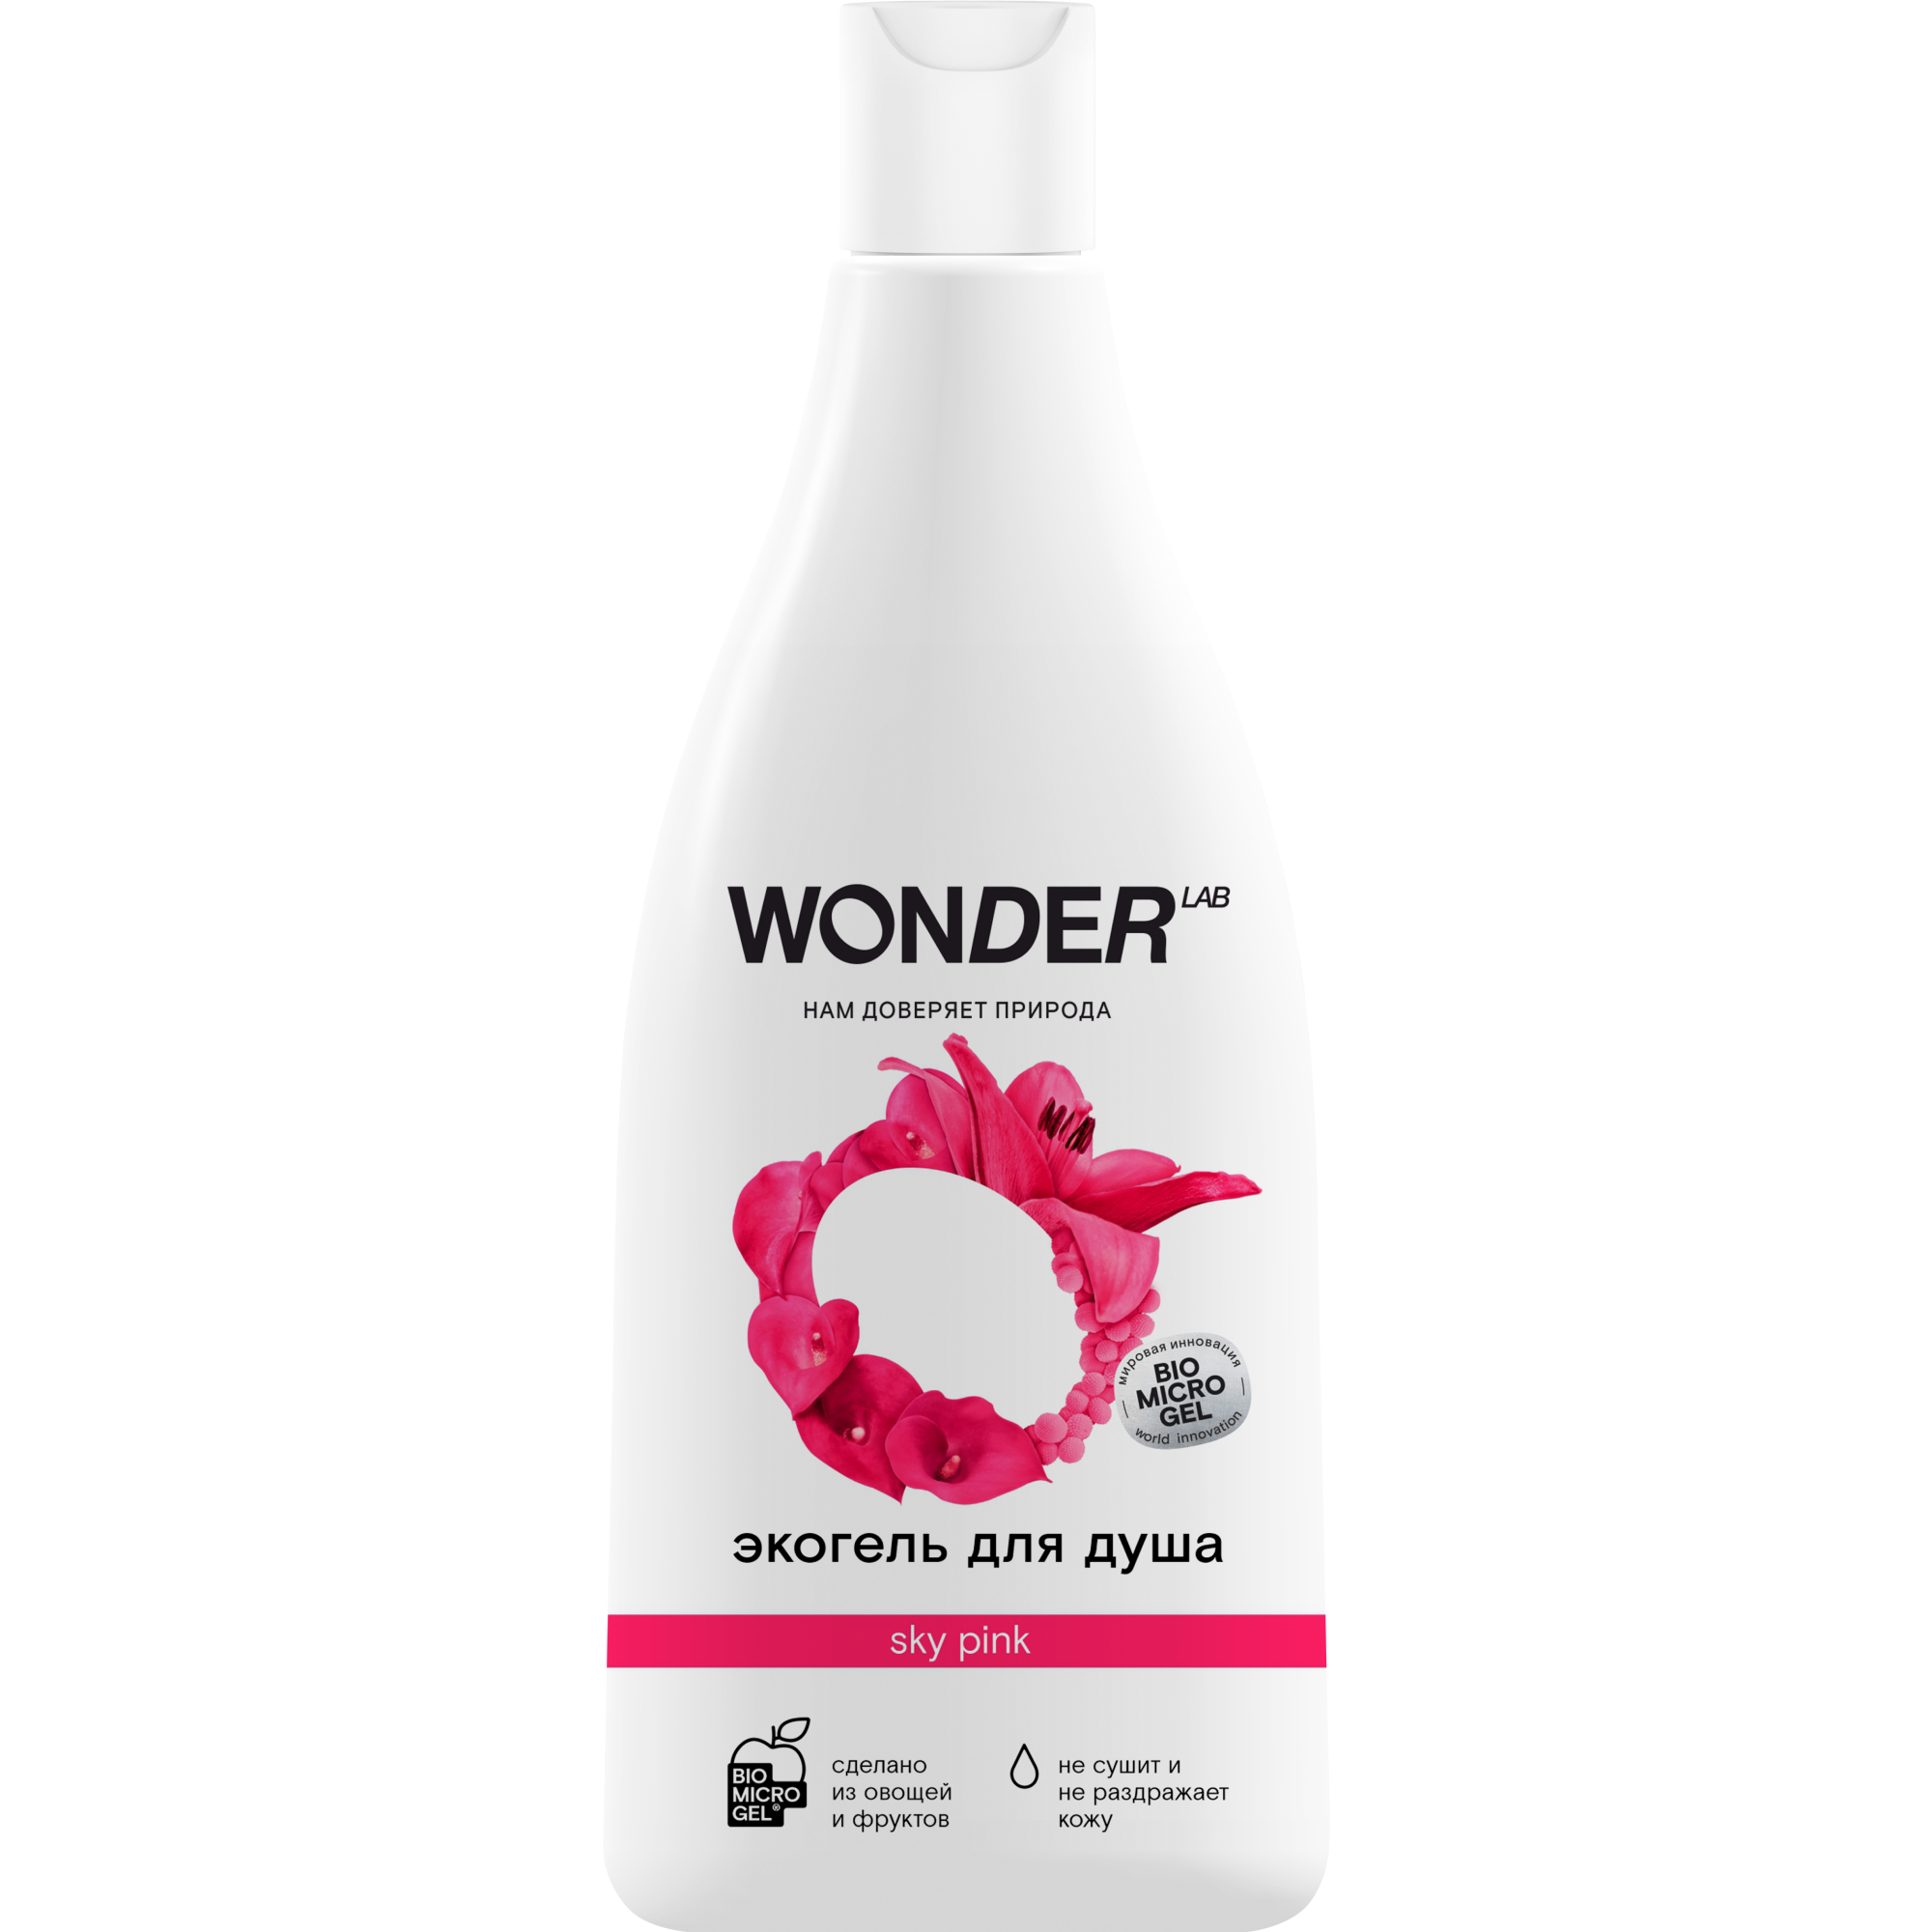 Гель для душа WONDER LAB sky pink увлажняющий Цветы, 550 мл гель для стирки wonder lab с ароматом мандарина и мяты эко для ного 1 4 л